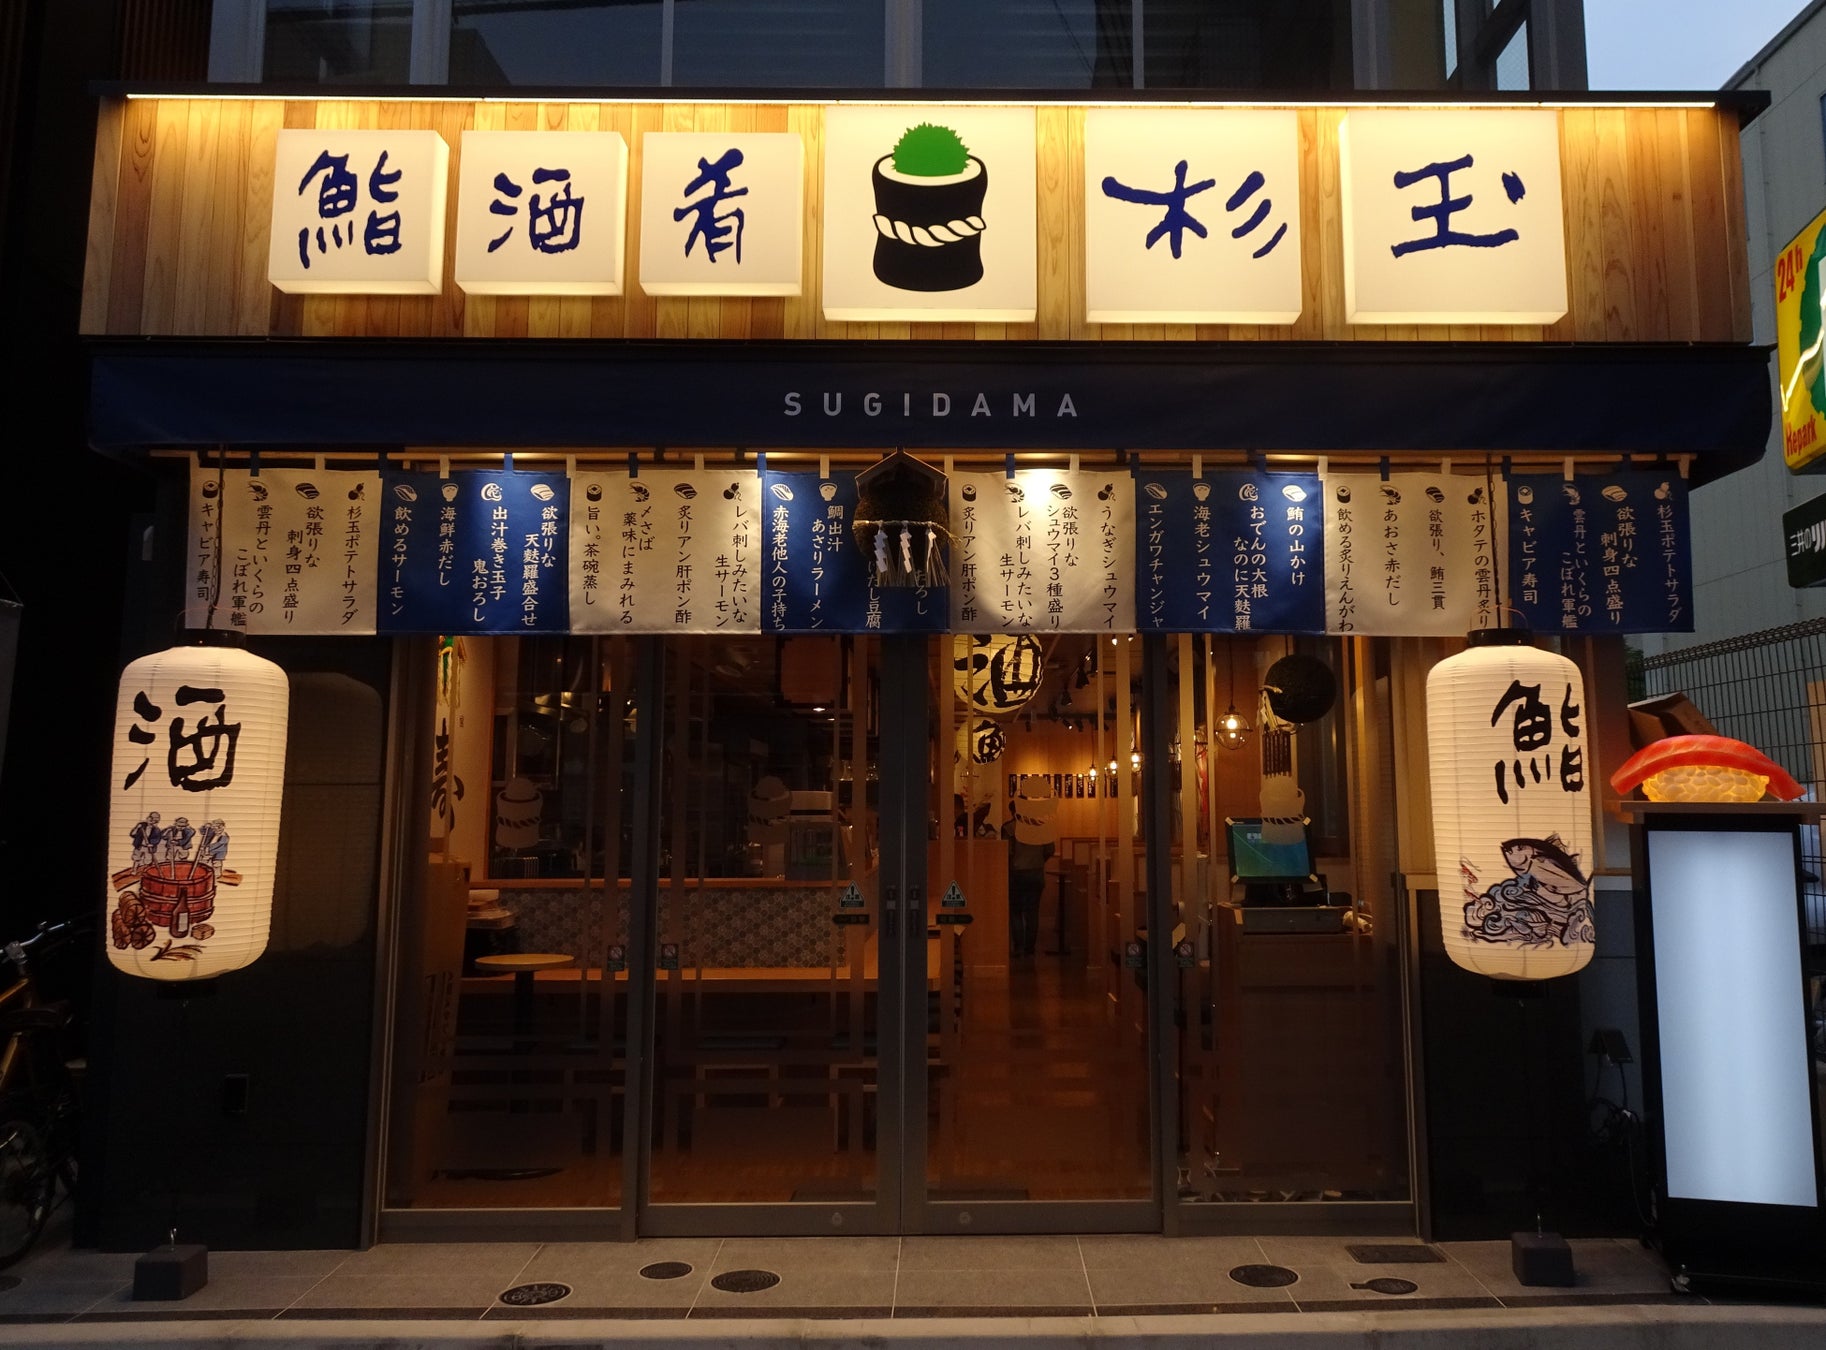 東急プラザ渋谷のシェアキッチンプロジェクト「もしもこうだったら」が実現するキッチン「もしも食堂」第３弾が開催！